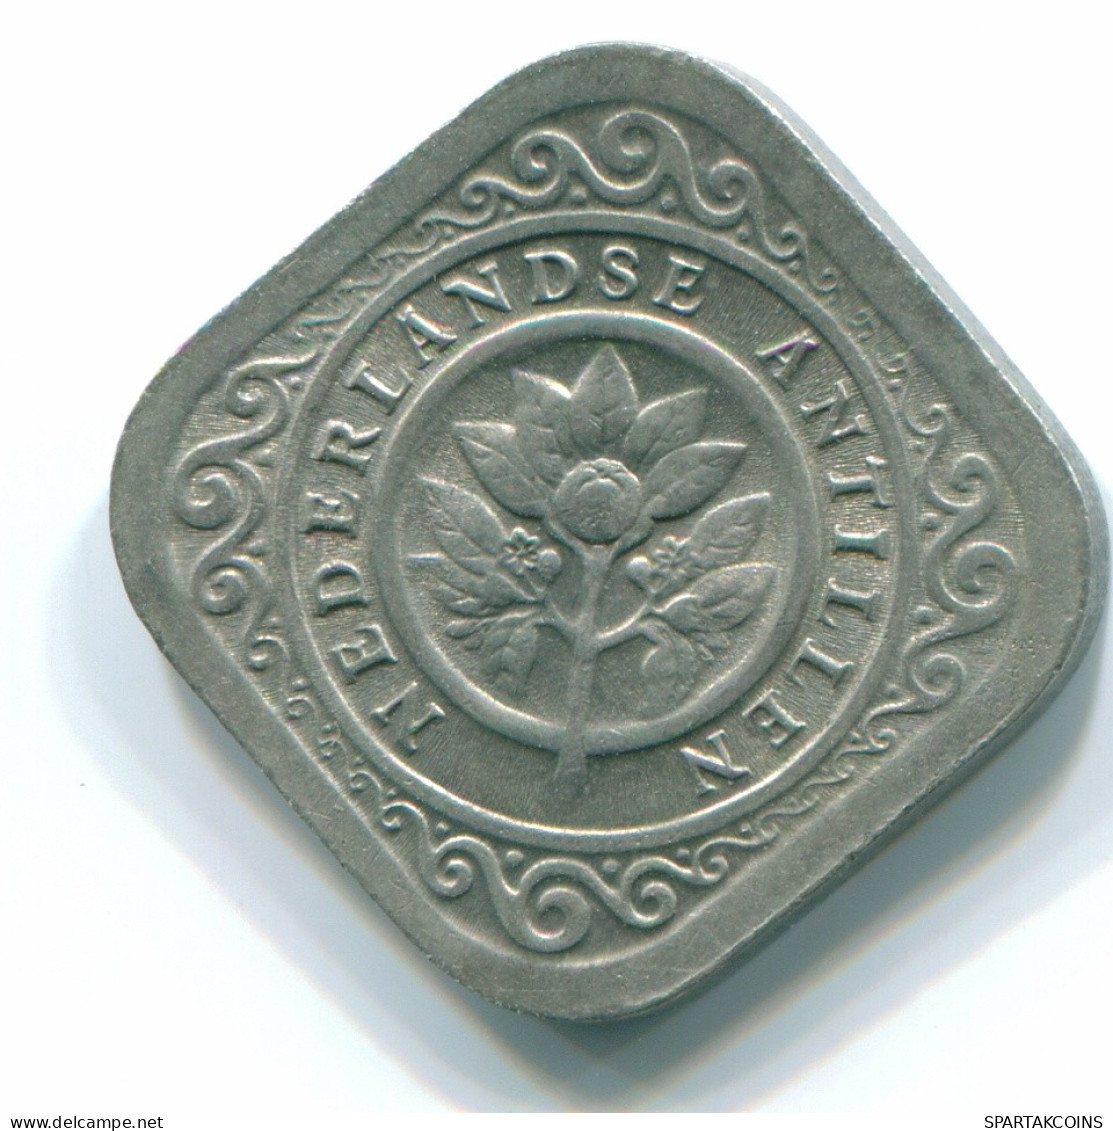 5 CENTS 1965 NIEDERLÄNDISCHE ANTILLEN Nickel Koloniale Münze #S12448.D.A - Antilles Néerlandaises